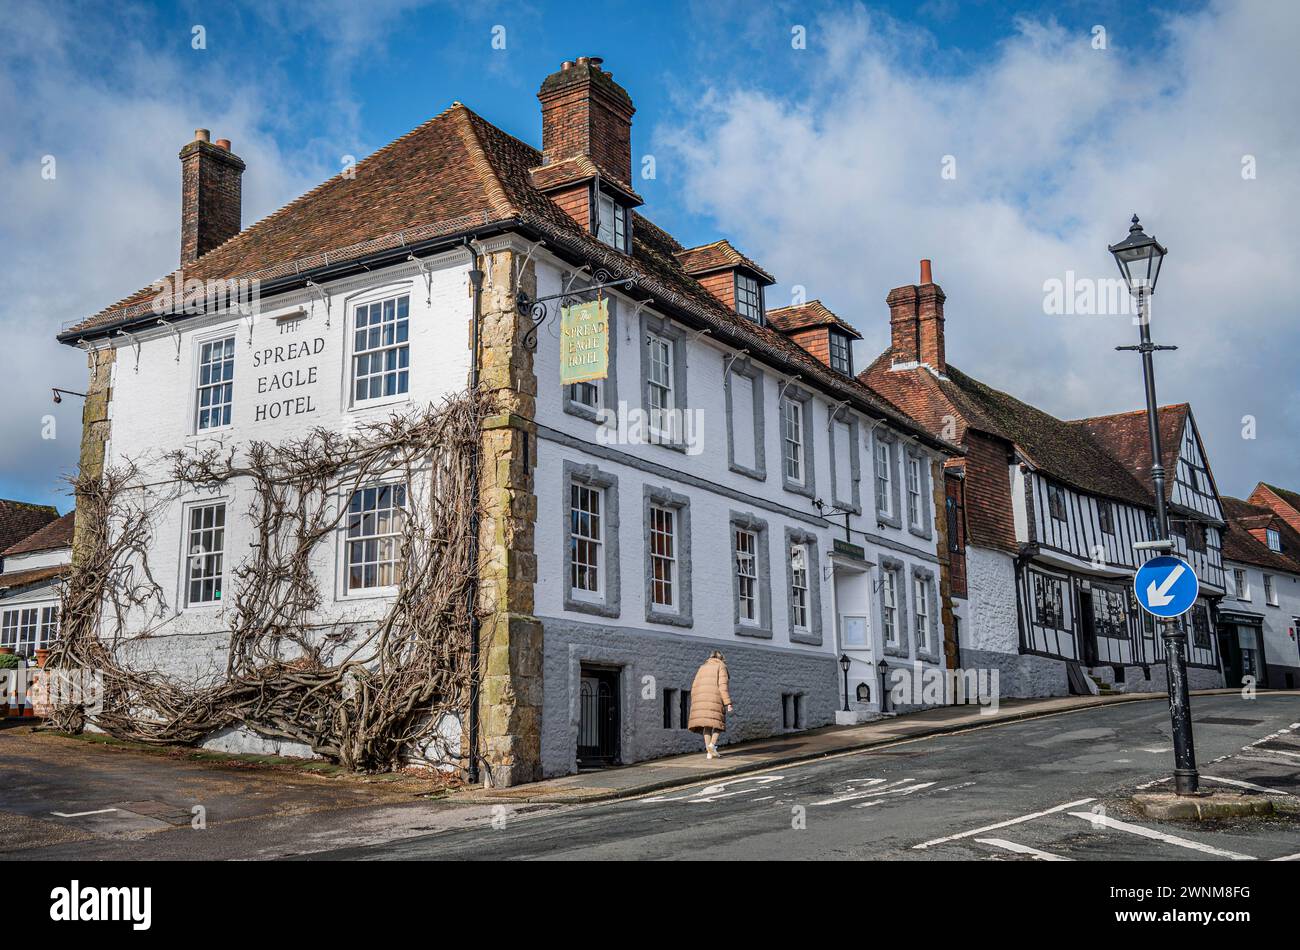 The Spread Eagle, una vecchia casa pubblica inglese e un hotel nella citta' mercato del West Sussex di Midhurst. Foto Stock